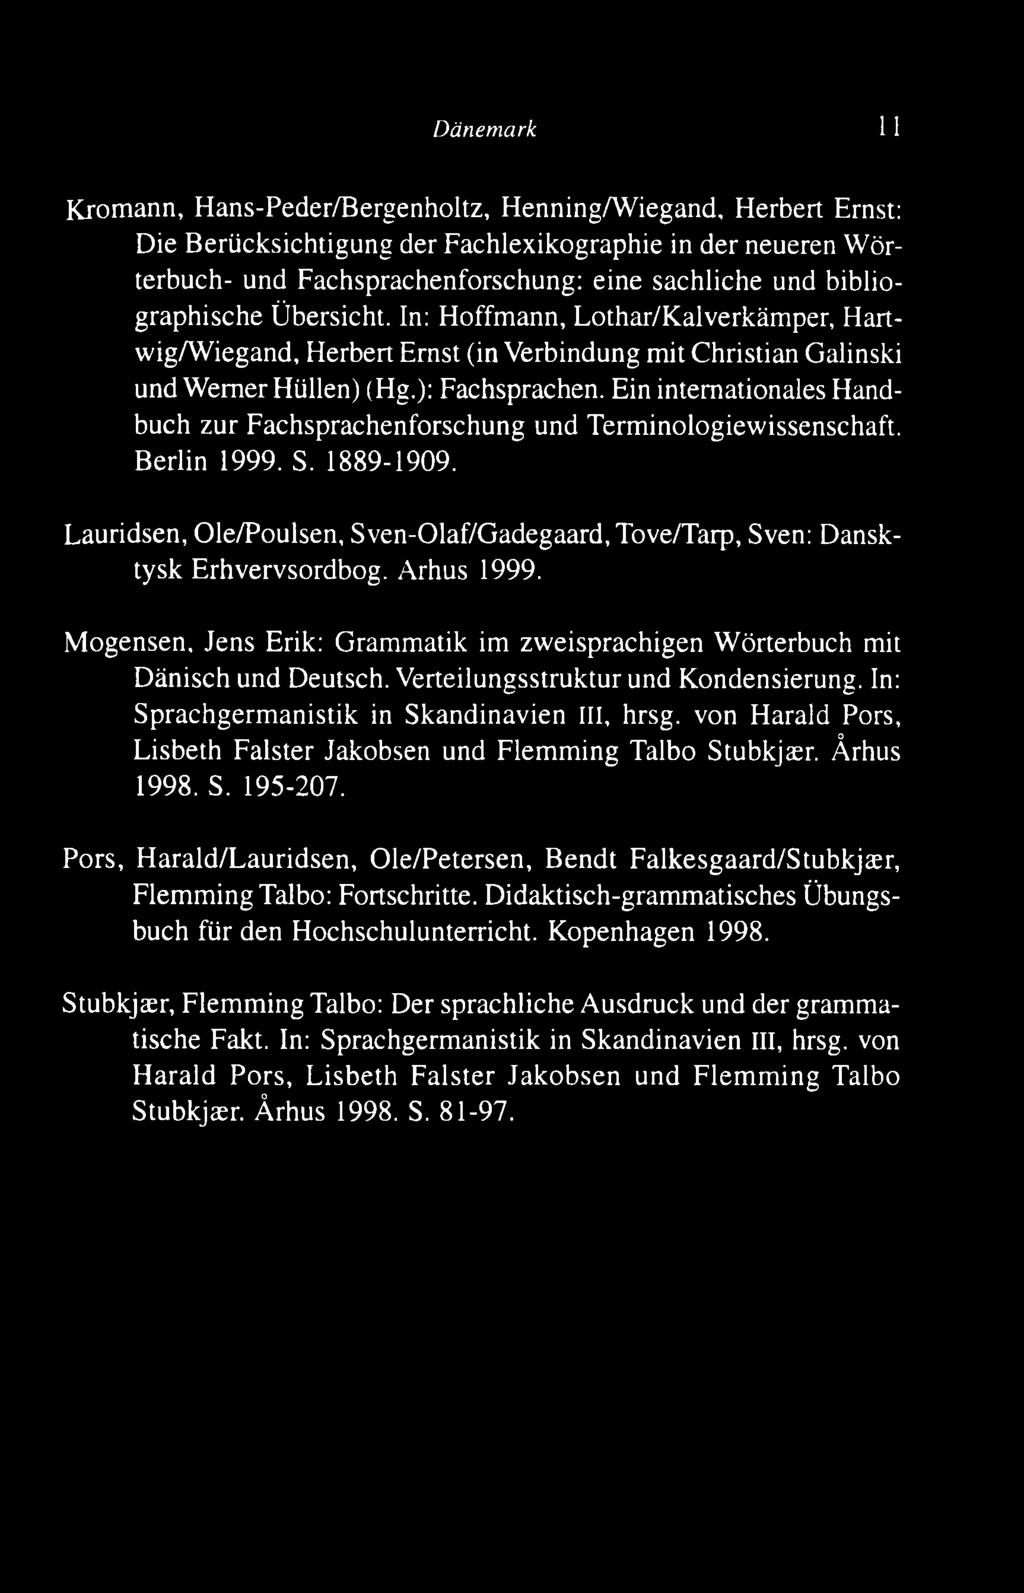 Ein internationales H andbuch zur Fachsprachenforschung und Term inologiewissenschaft. B erlin 1999. S. 1889-1909.